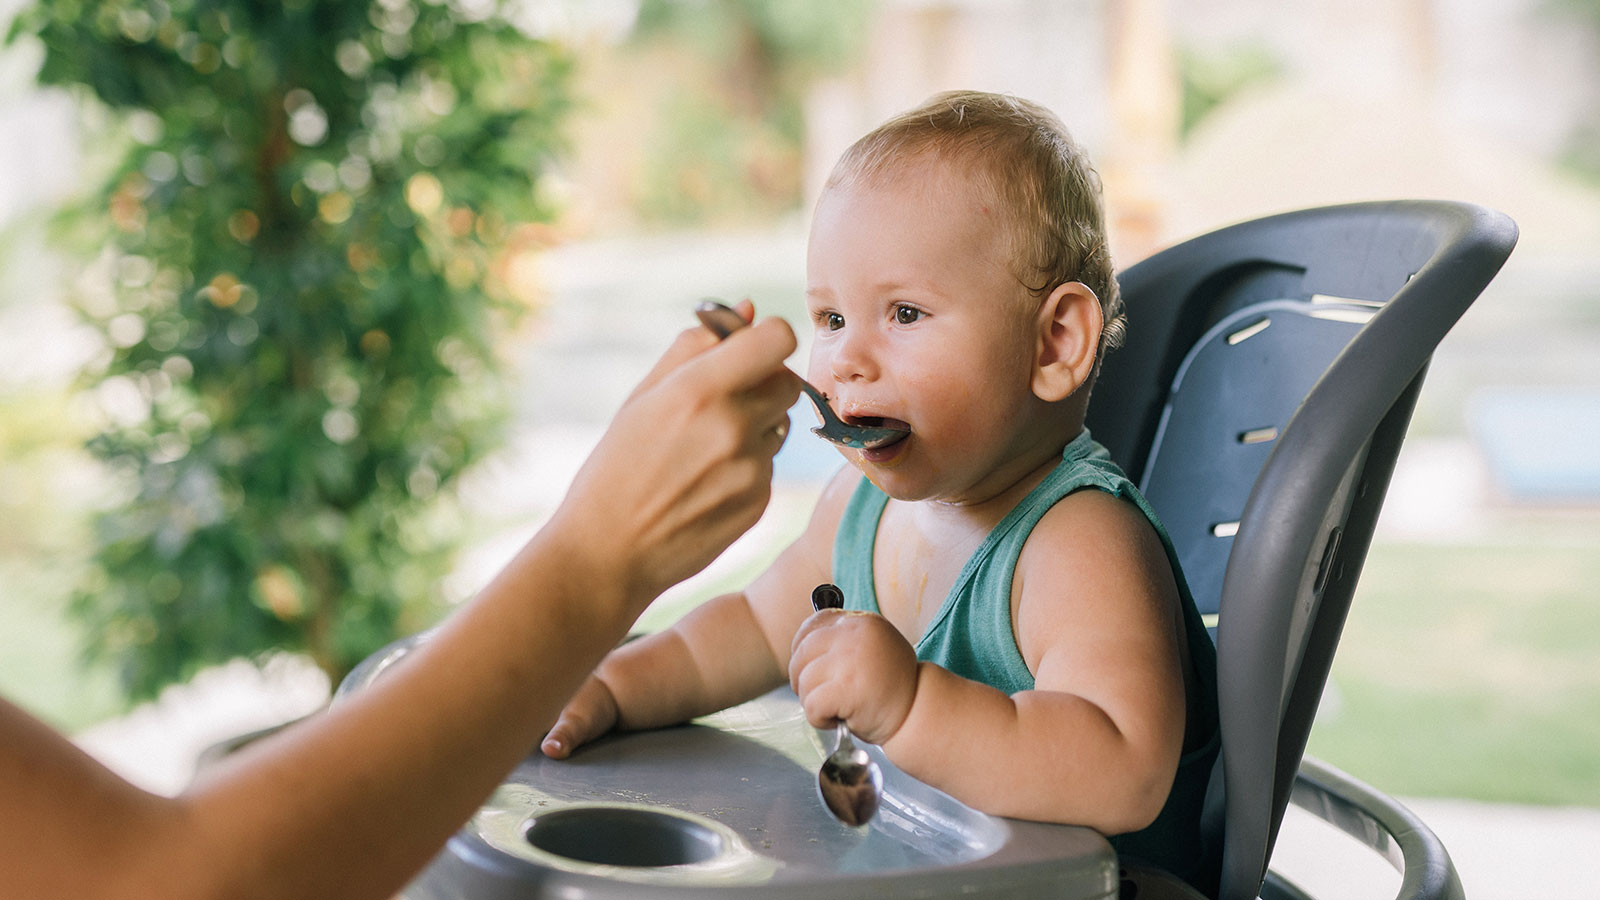 parent spoon feeding their baby in a high chair